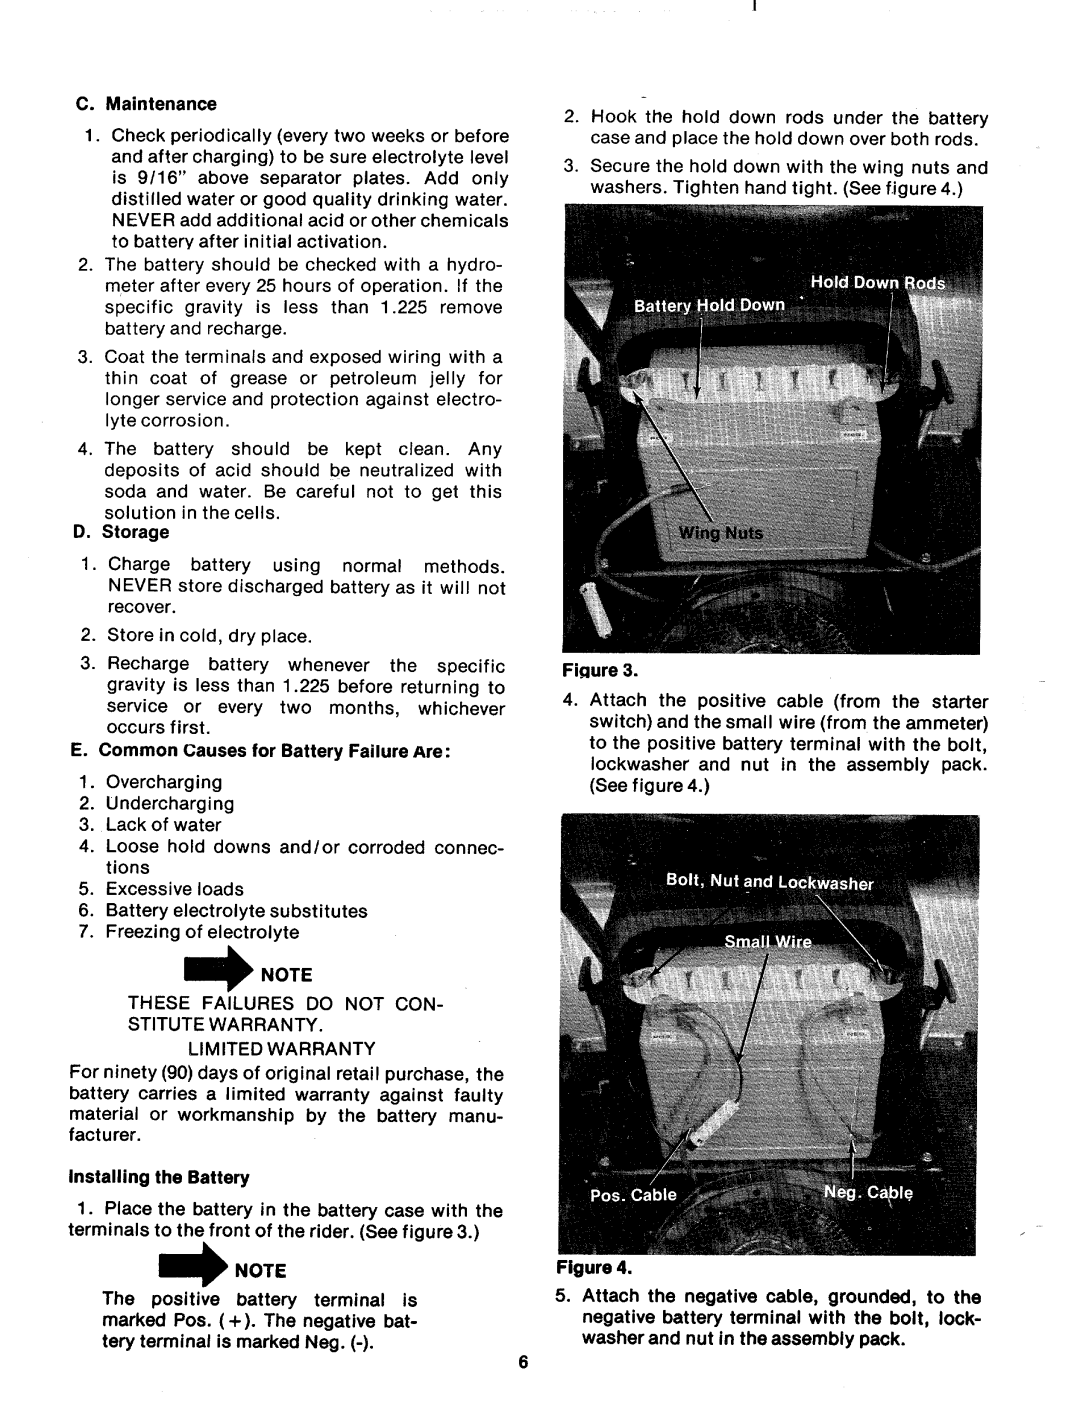 MTD 138-385A, 138-380A manual 